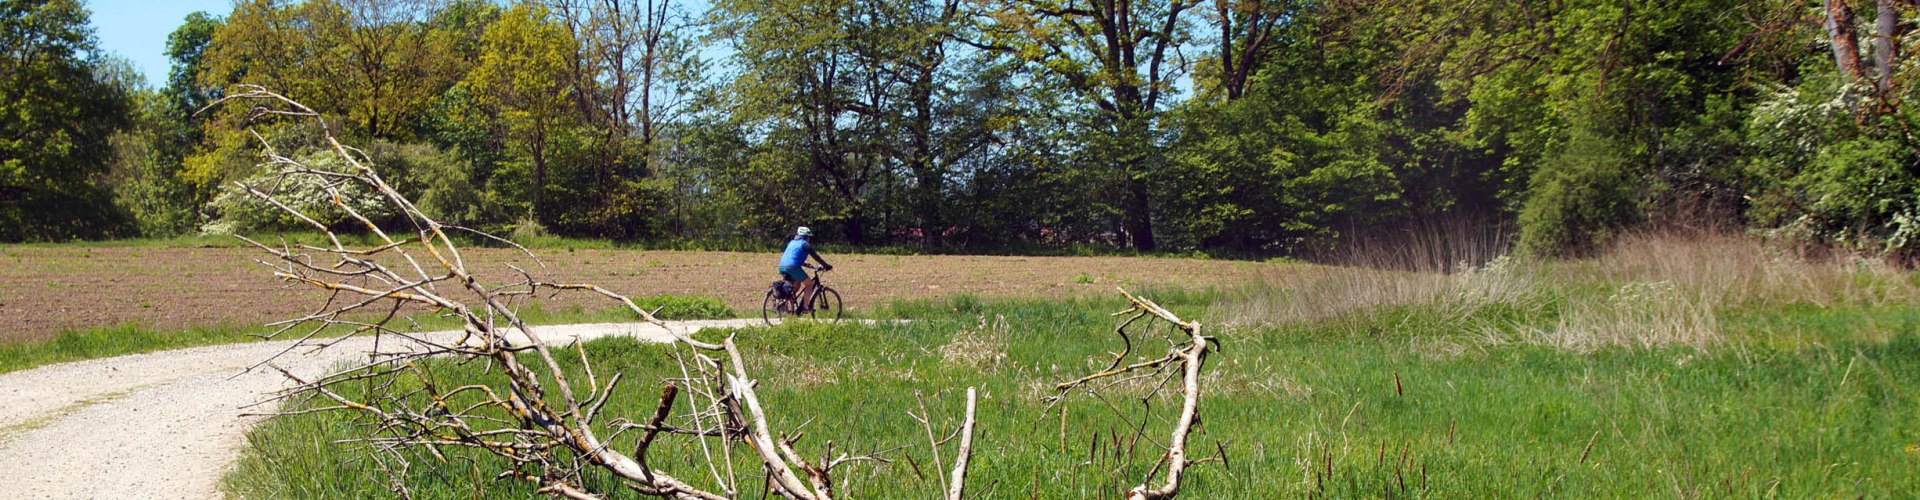 Fahrradfahrer in schöner Landschaft im Holzland